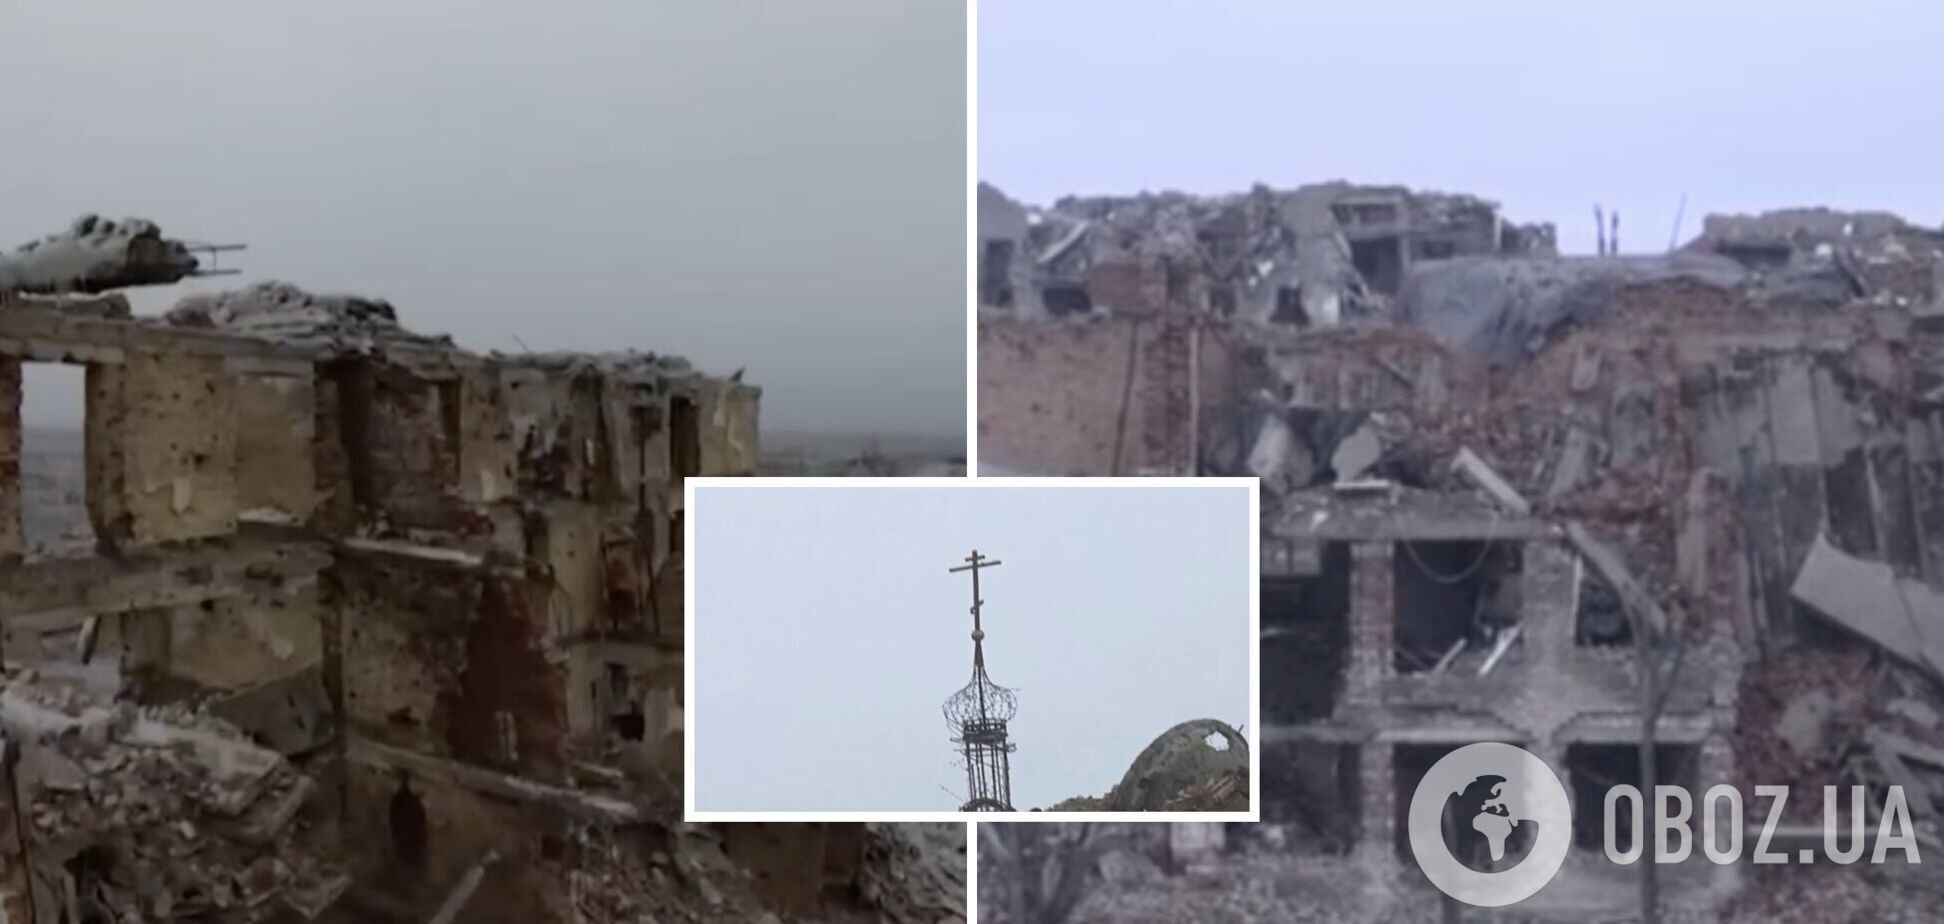 Сплошная руина: как выглядит Марьинка после российских попыток 'освободить' город. Видео